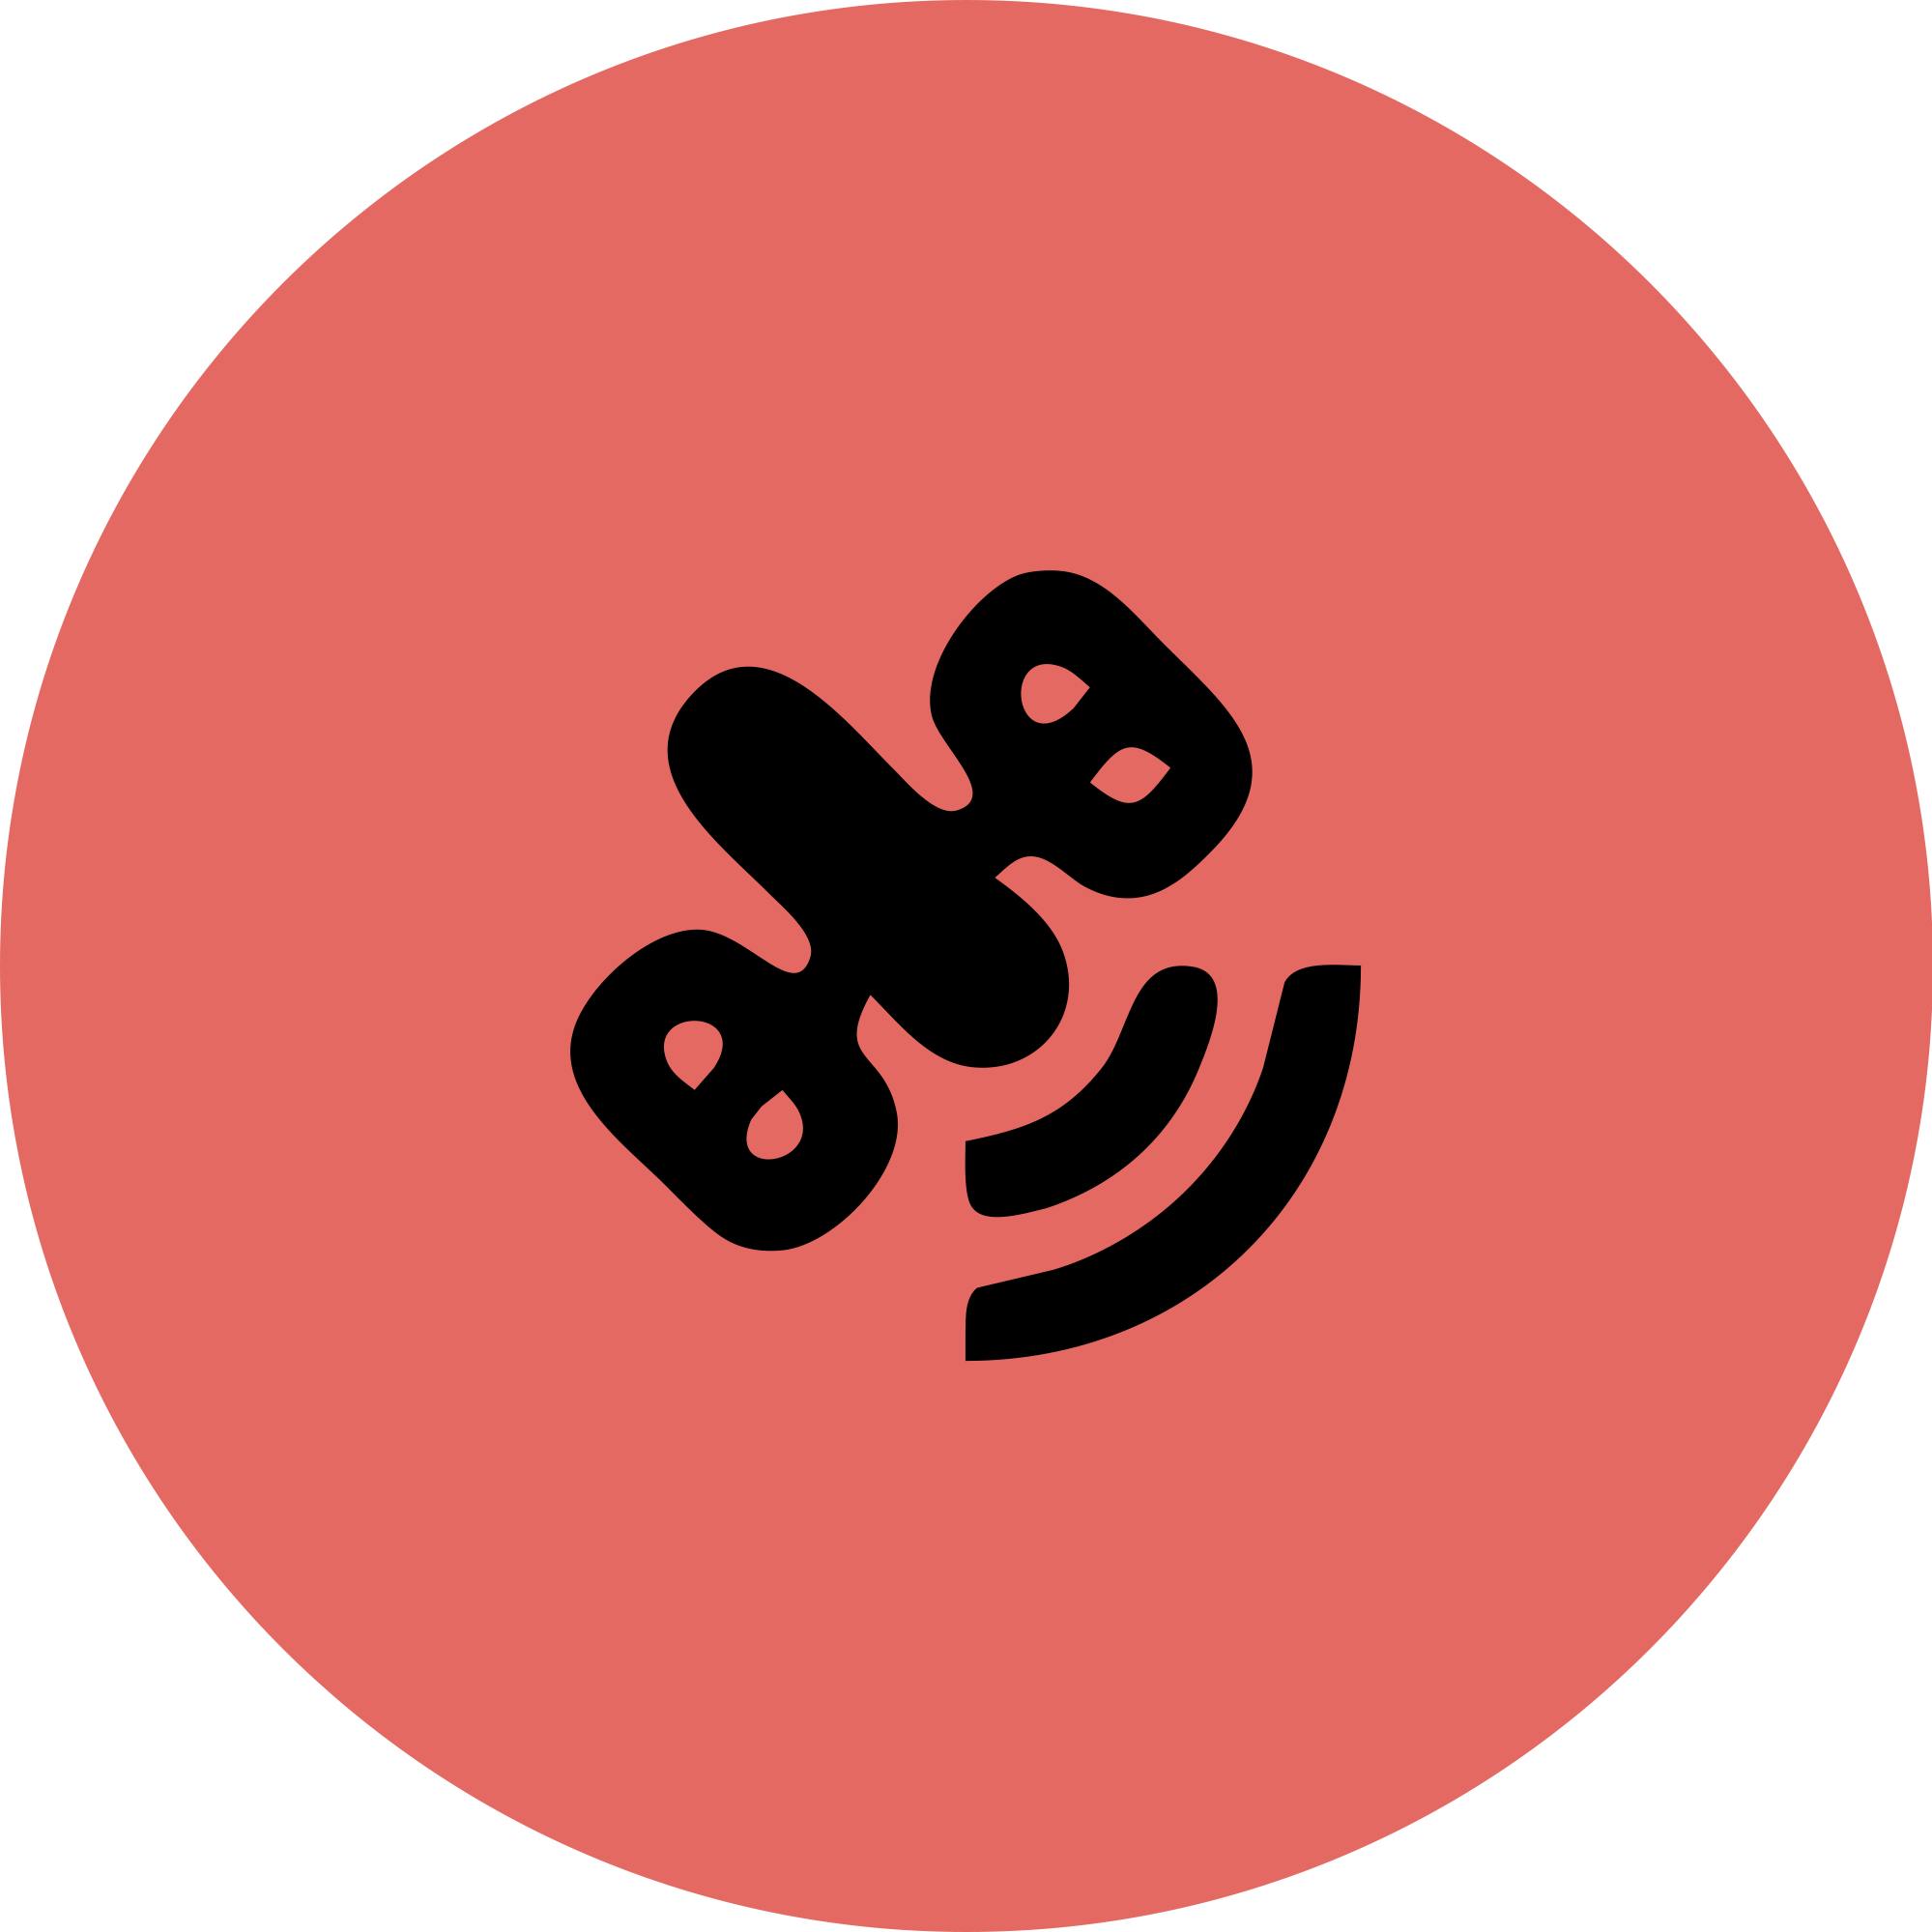 Symbol der Pixel 9 Satellite Gateway-App: Schwarzes Satellitensymbol auf einem rosa-roten kreisförmigen Hintergrund